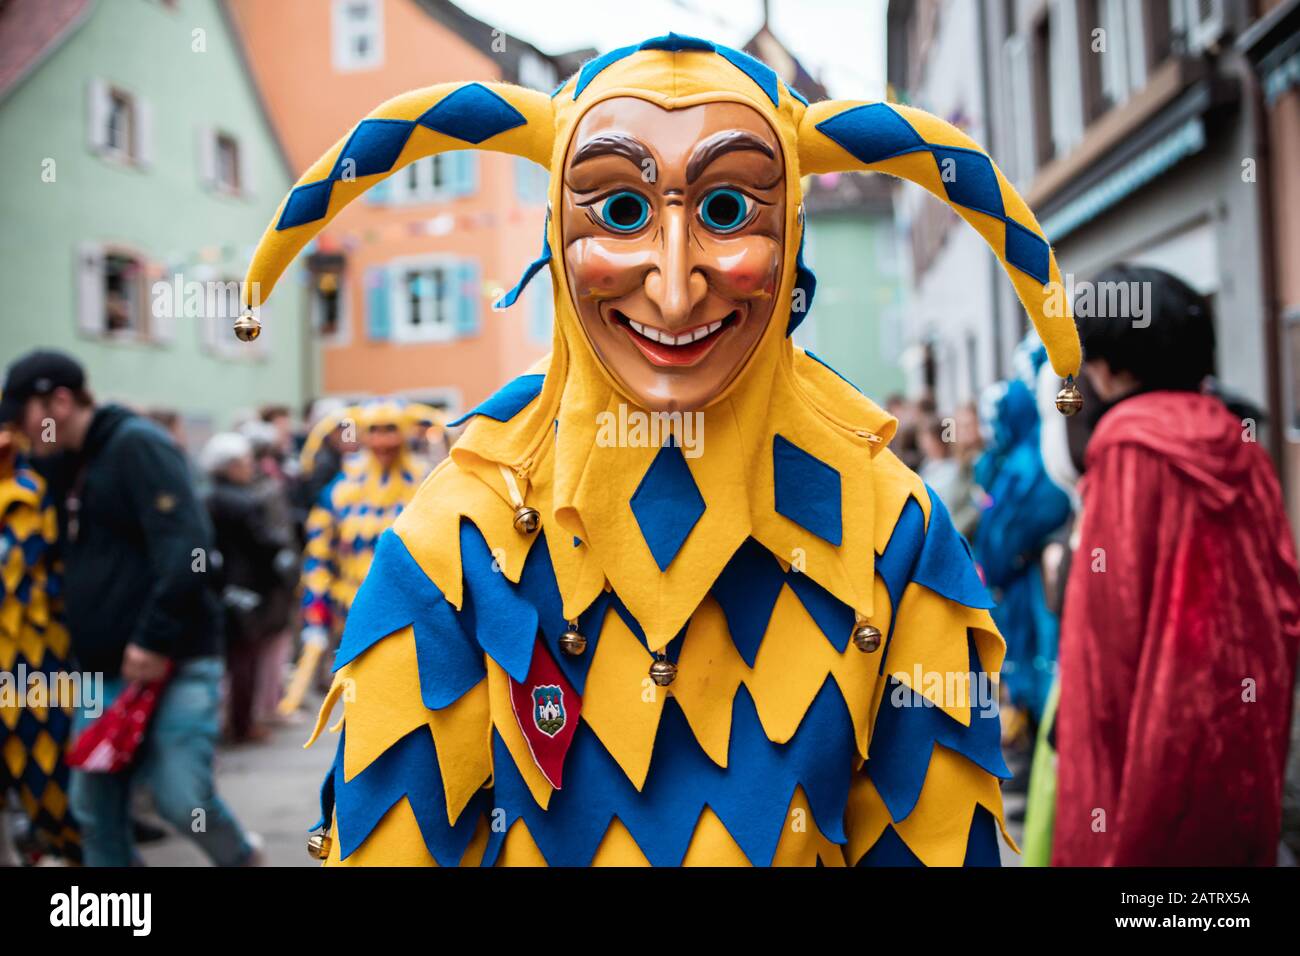 Bajass de Waldkirch - belle figure d'idiot dans une robe bleu-jaune avec une expression curieuse sur le défilé de carnaval à Staufen, dans le sud de l'Allemagne Banque D'Images